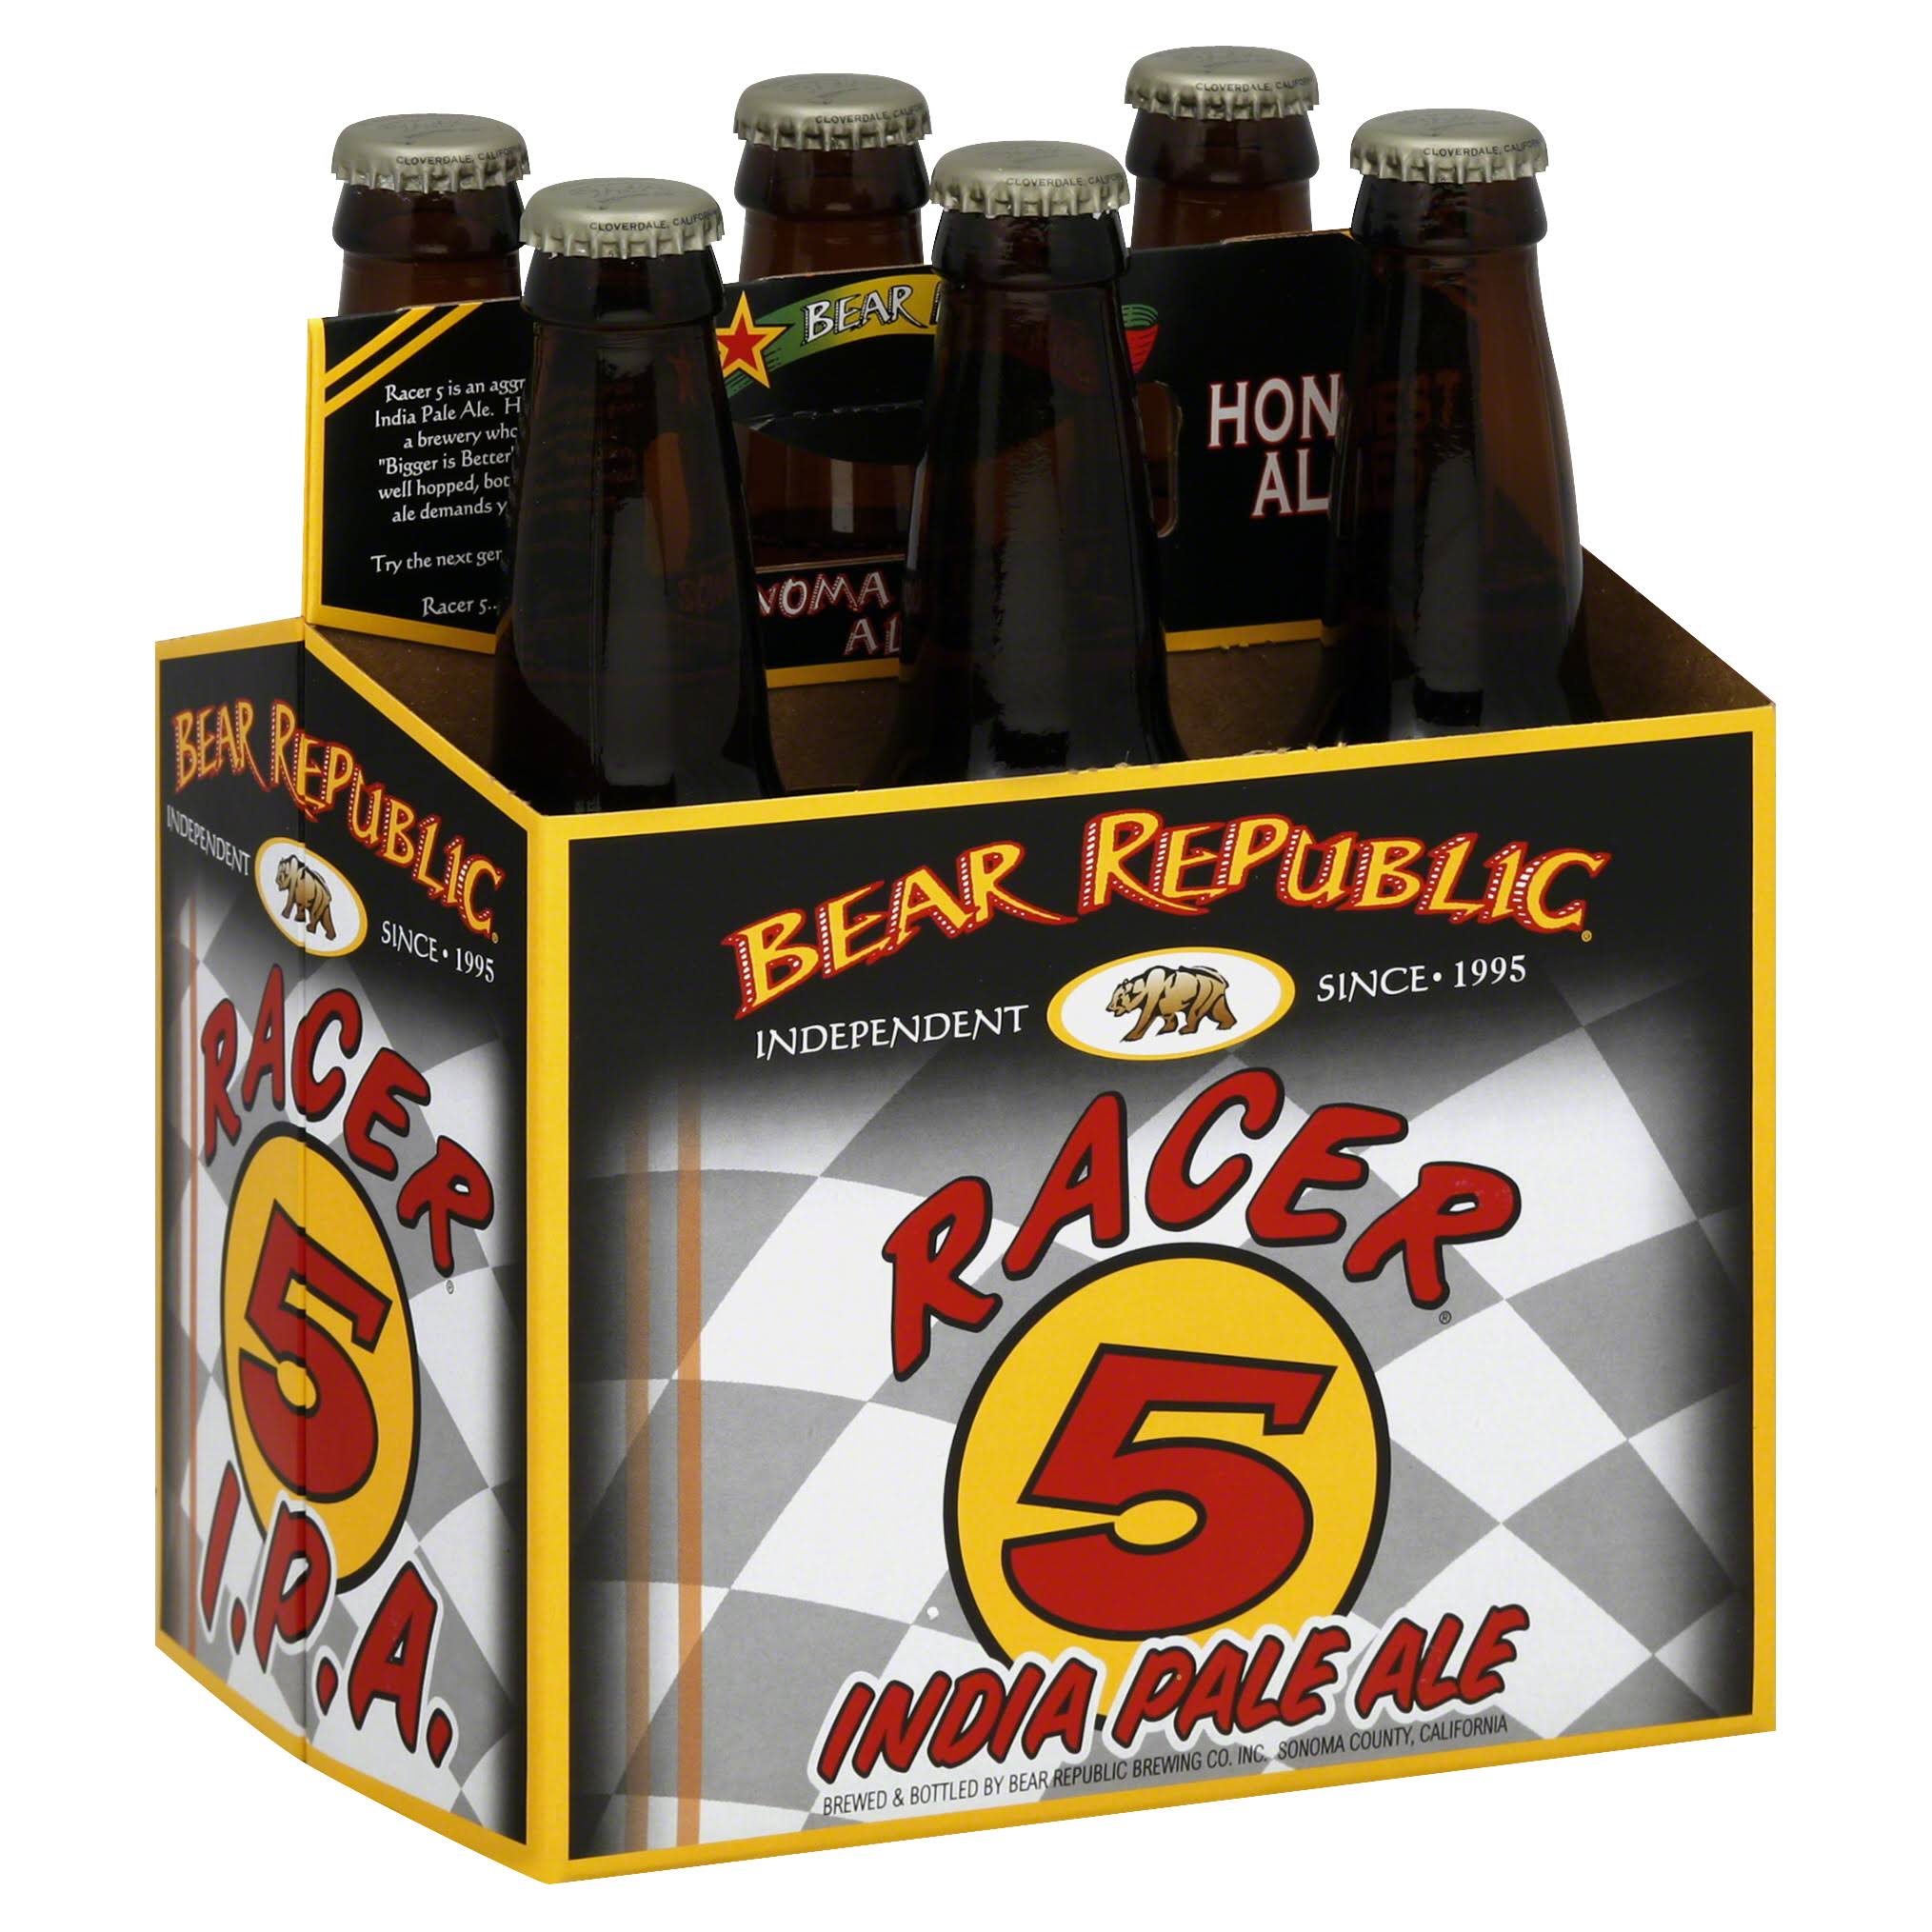 Bear Republic Ale, India Pale, Racer 5 - 6 pack, 12 fl oz bottles